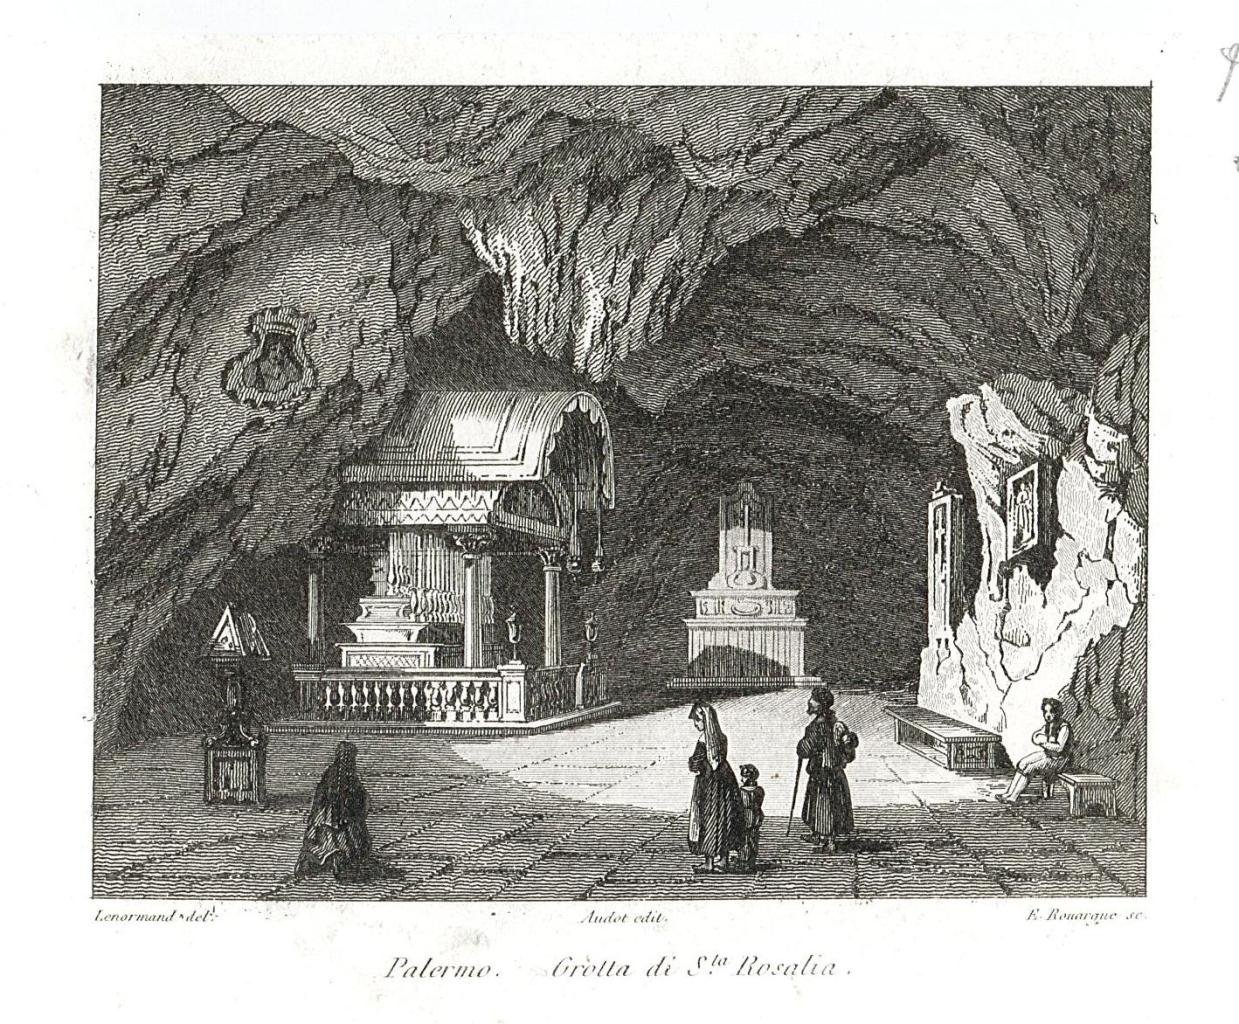 Palermo Grotta di S.ta Rosalia